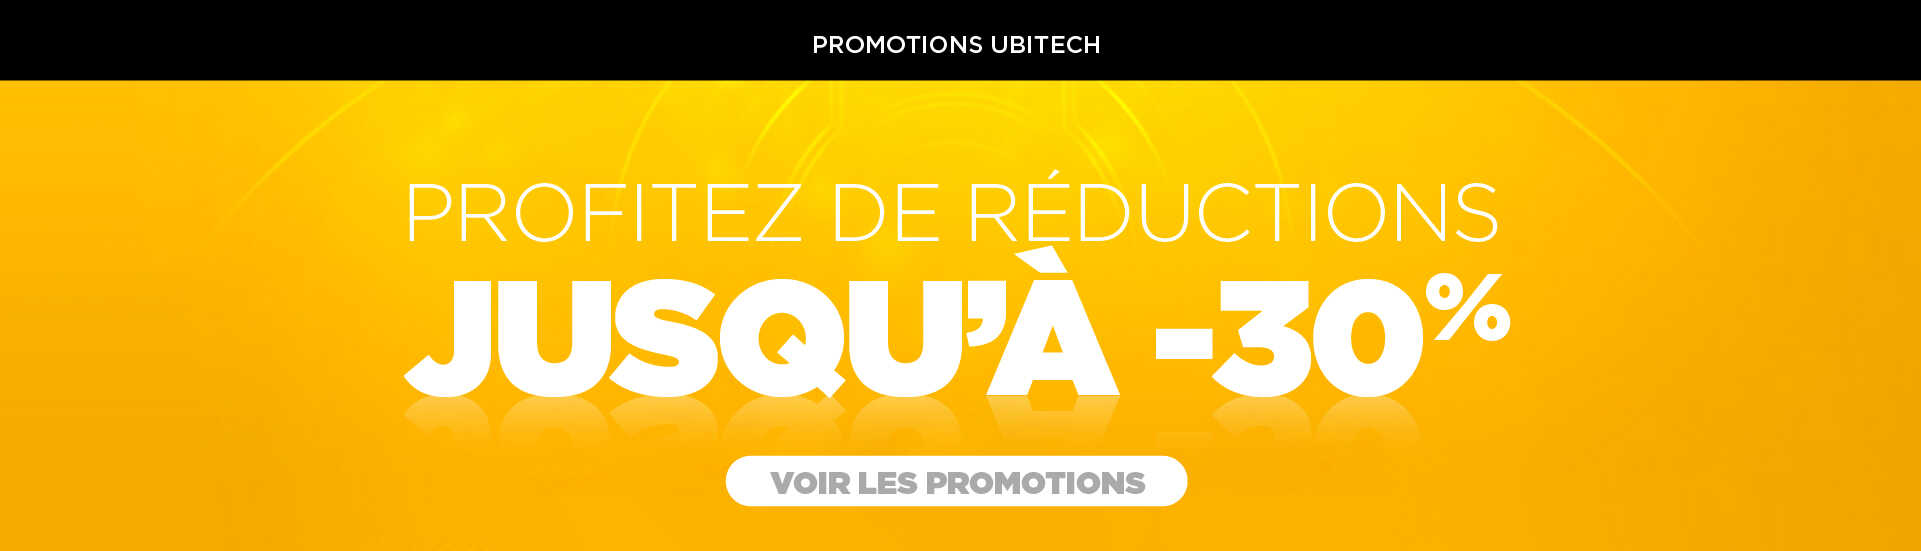 Promotions Ubitech